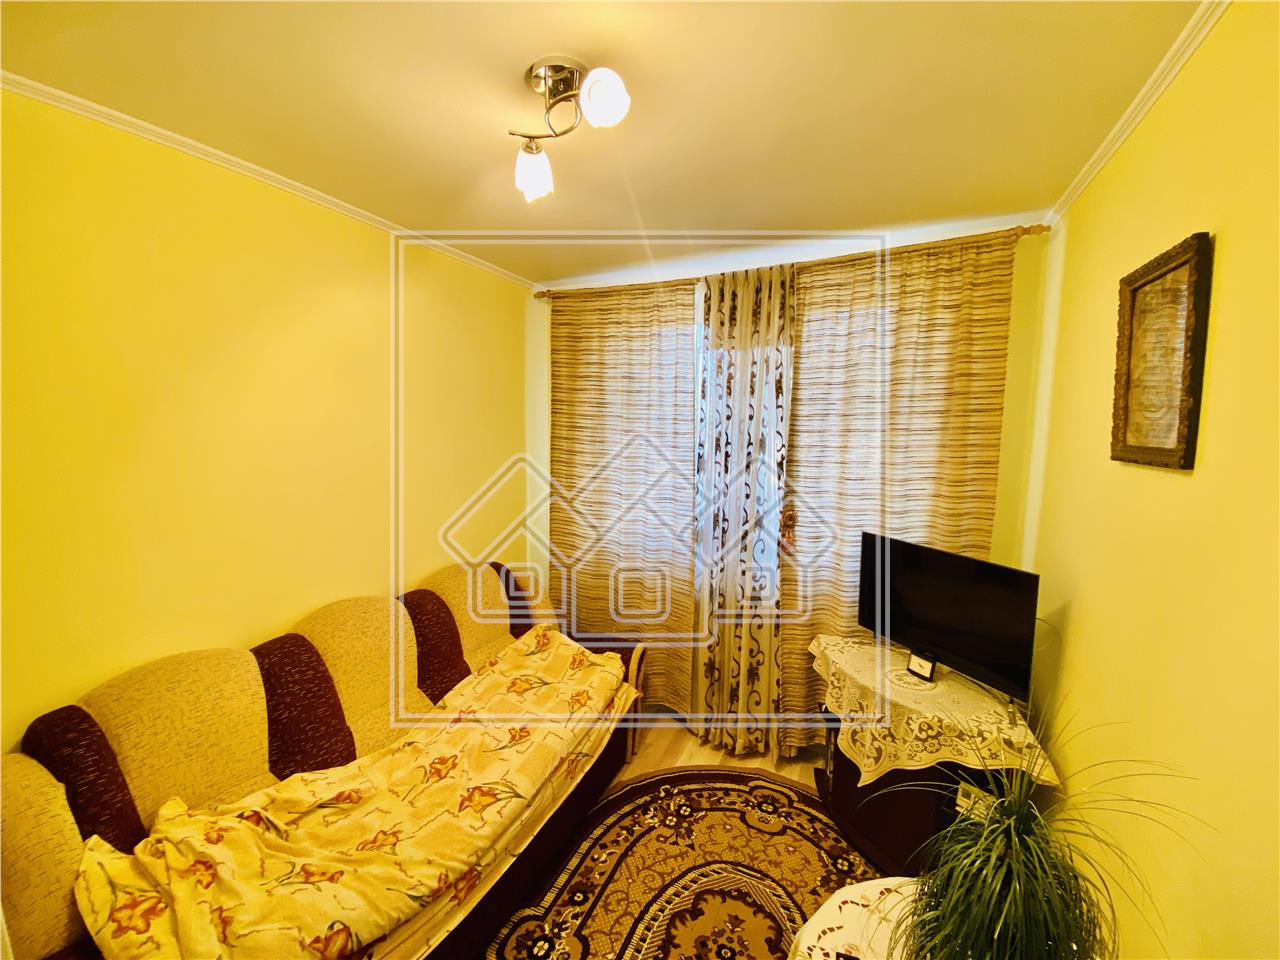 Wohnung zu verkaufen in Sibiu - 3 Zimmer und Balkon - Hipodrom I Area